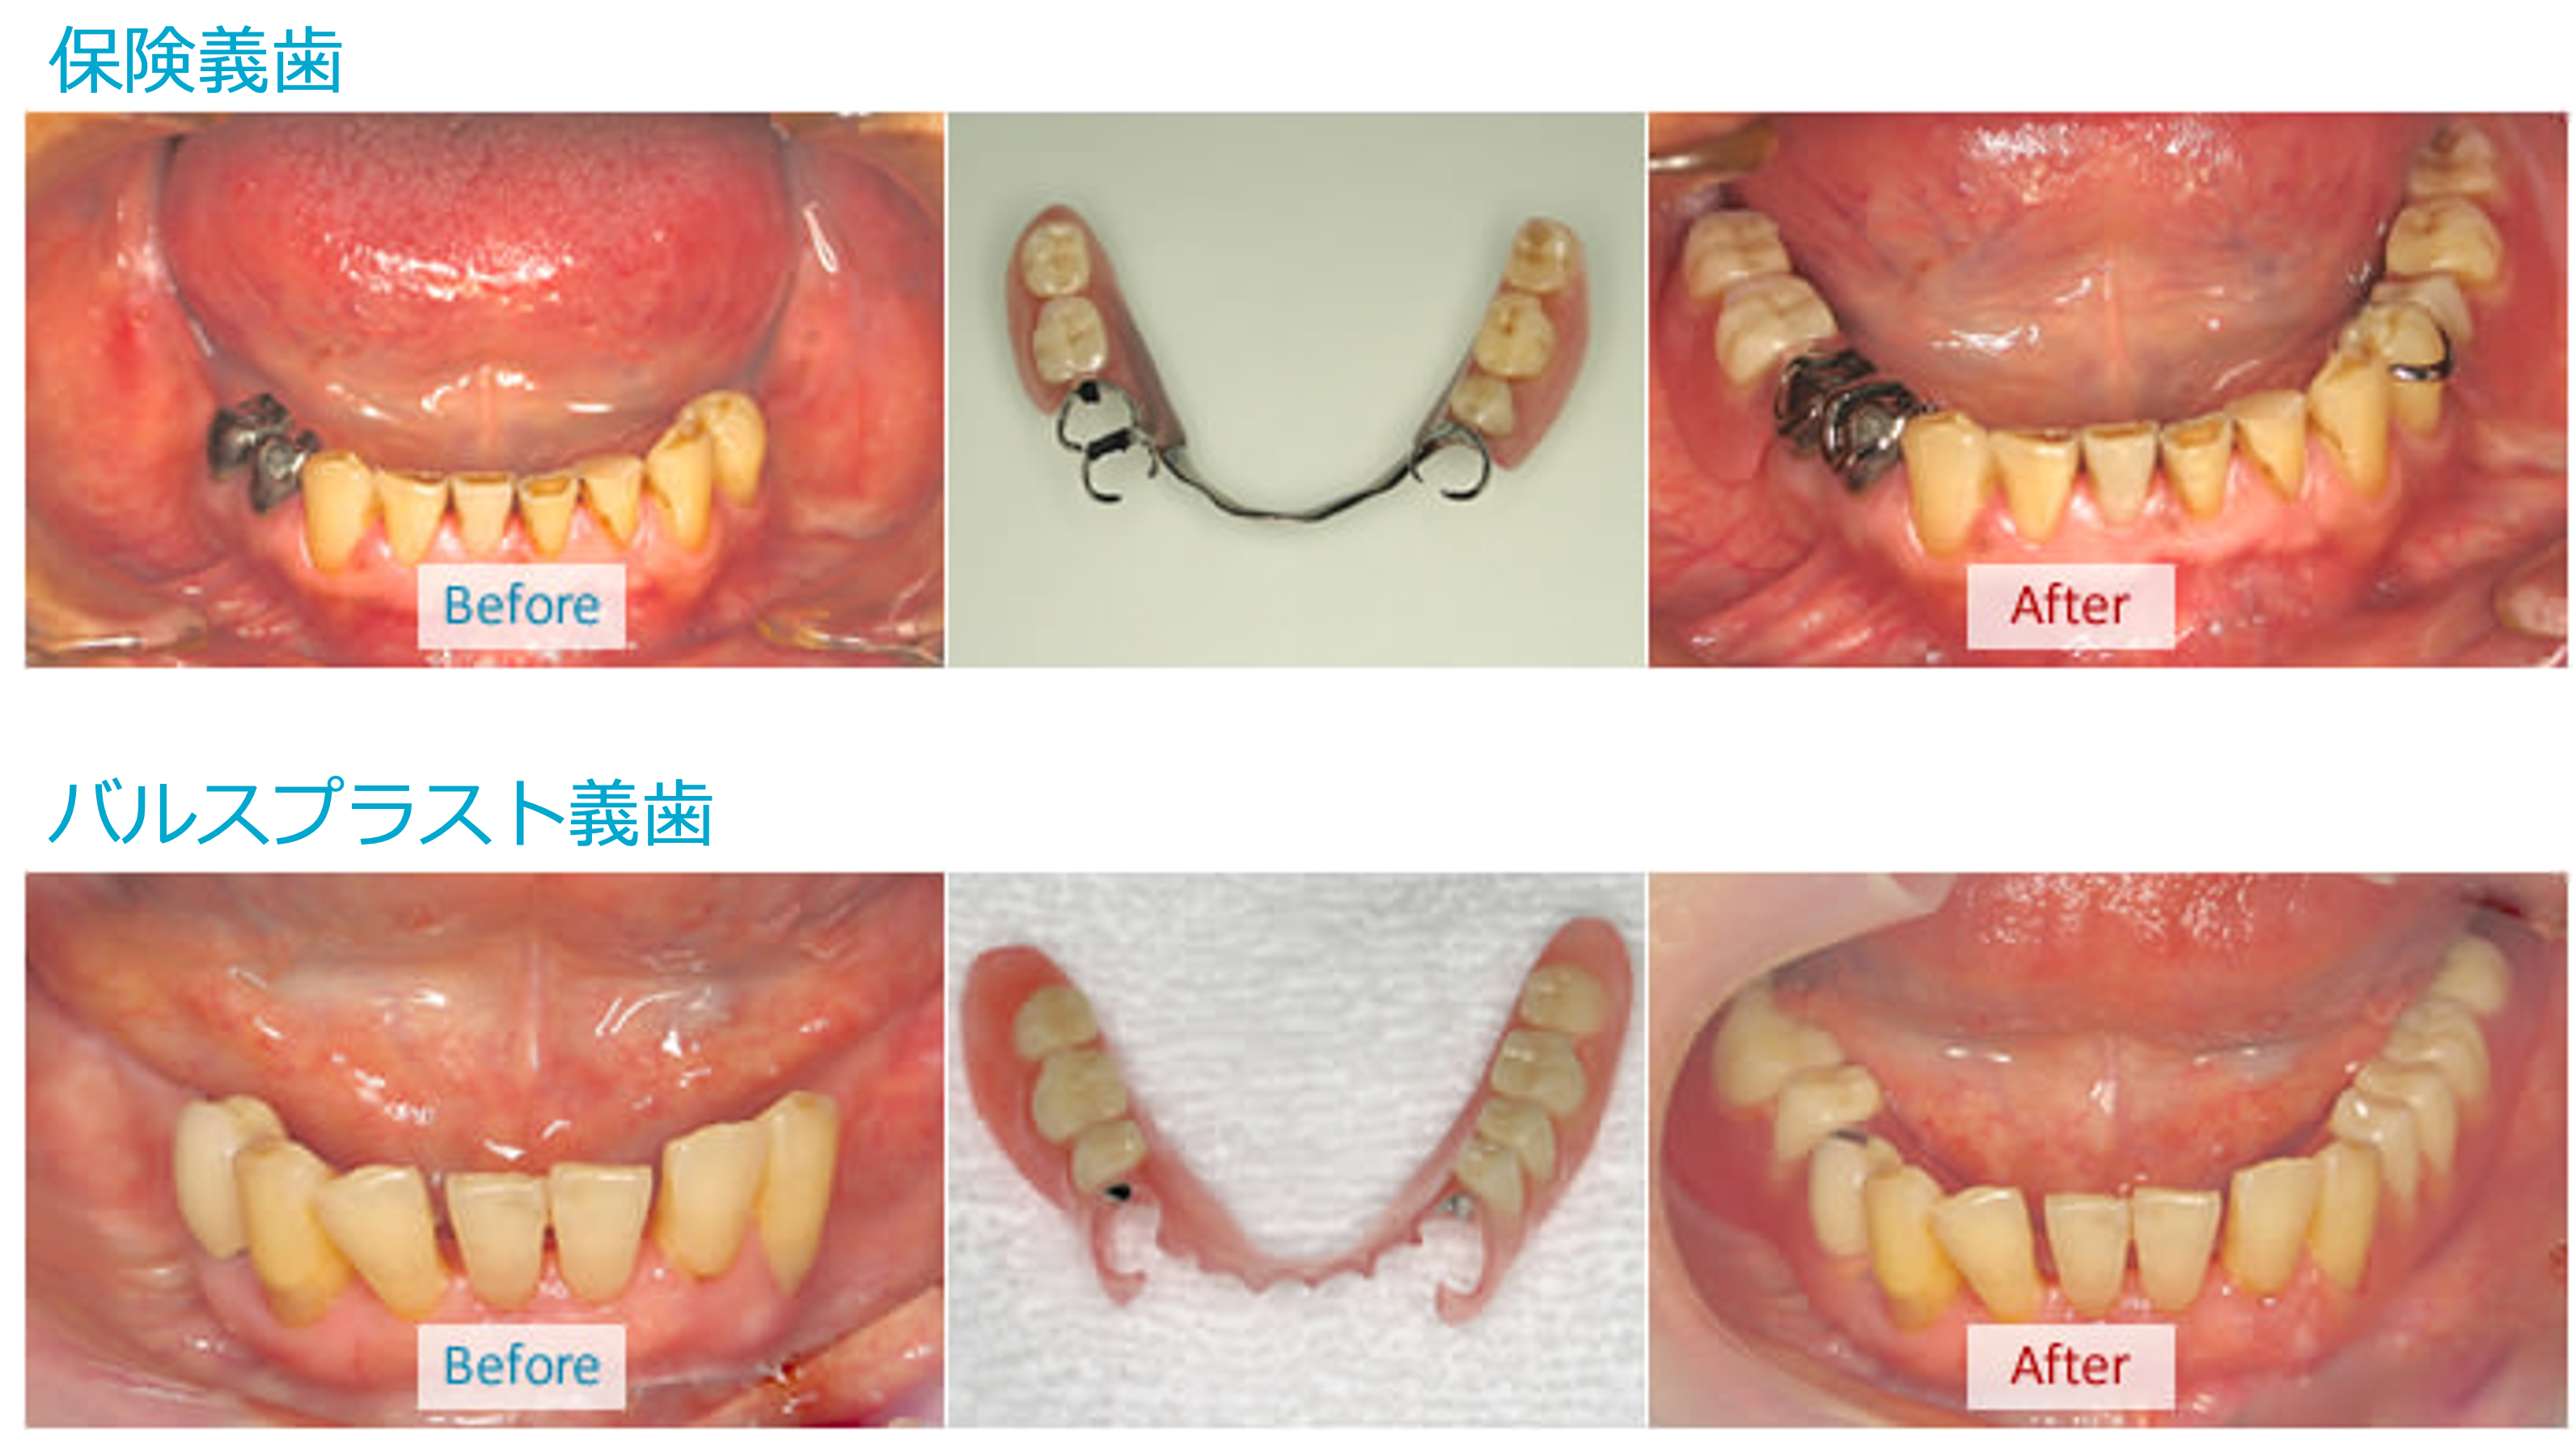 保険義歯とバルプラスト義歯の比較